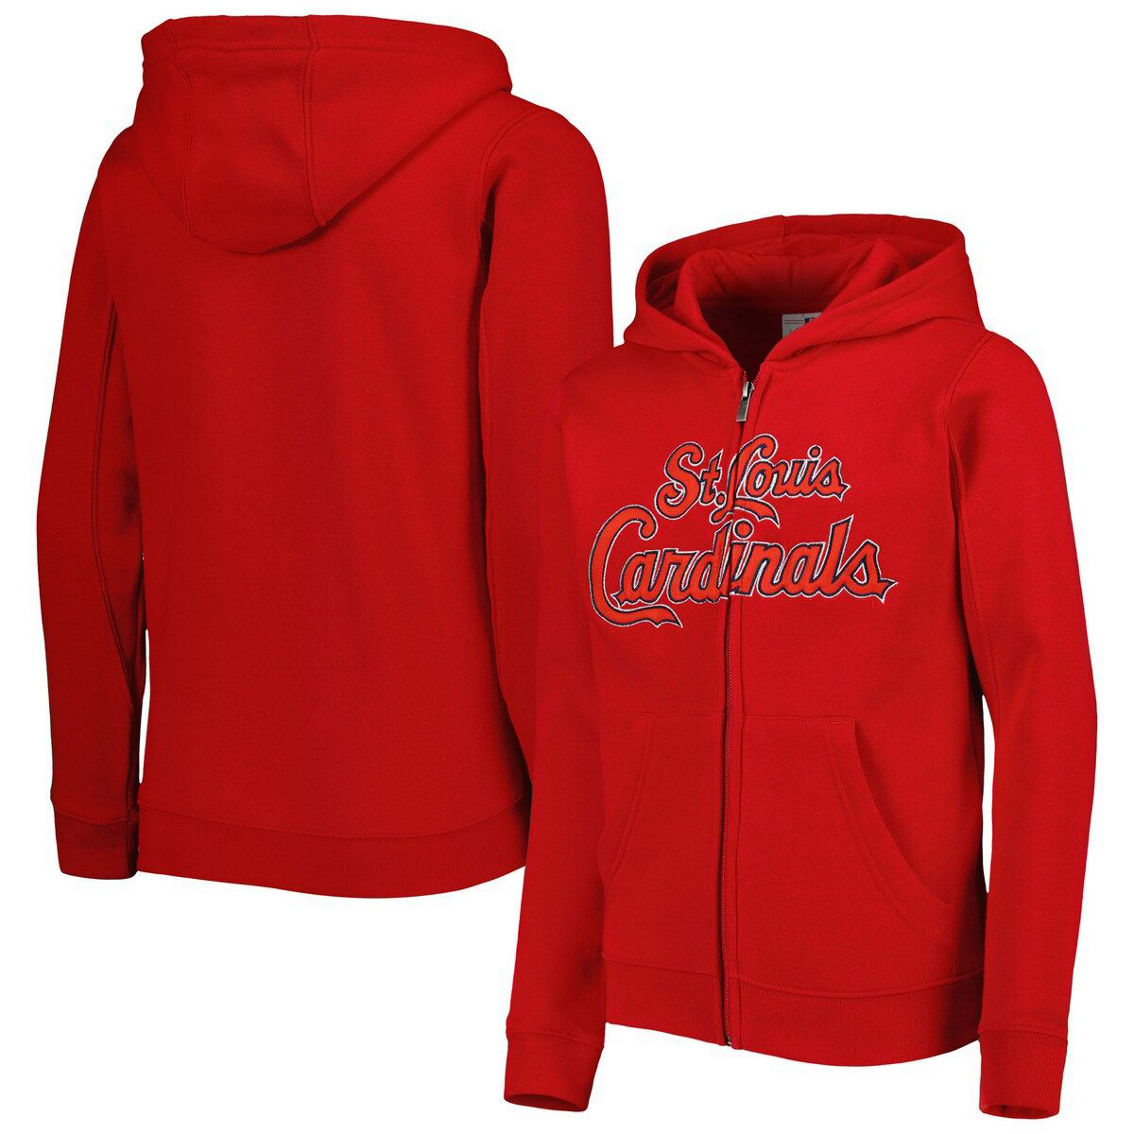 Outerstuff Youth Red St. Louis Cardinals Wordmark Full-Zip Fleece Hoodie - Image 2 of 4